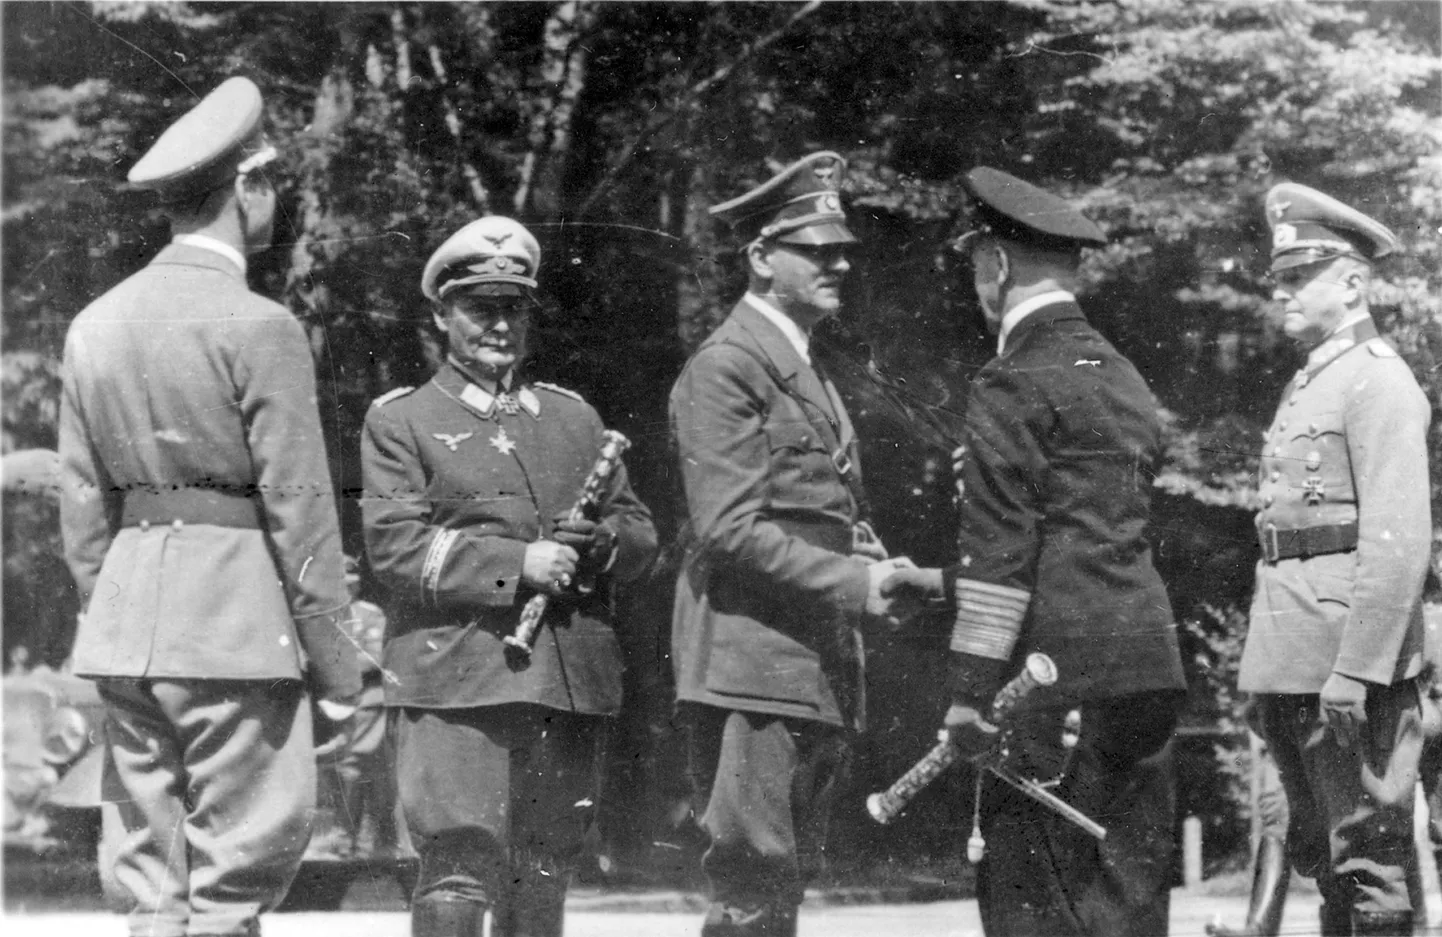 Ajalooline foto, millel on näha (vasakult paremale) seljaga nimetut ohvitseri, Hermann Göringit, Adolf Hitlerit, Erich Raederit ja Wilhelm Keitelit 22. juunil 1940 Prantsusmaal Compiegne'is, kus kirjutati alla Prantsusmaa alistumisdokument.